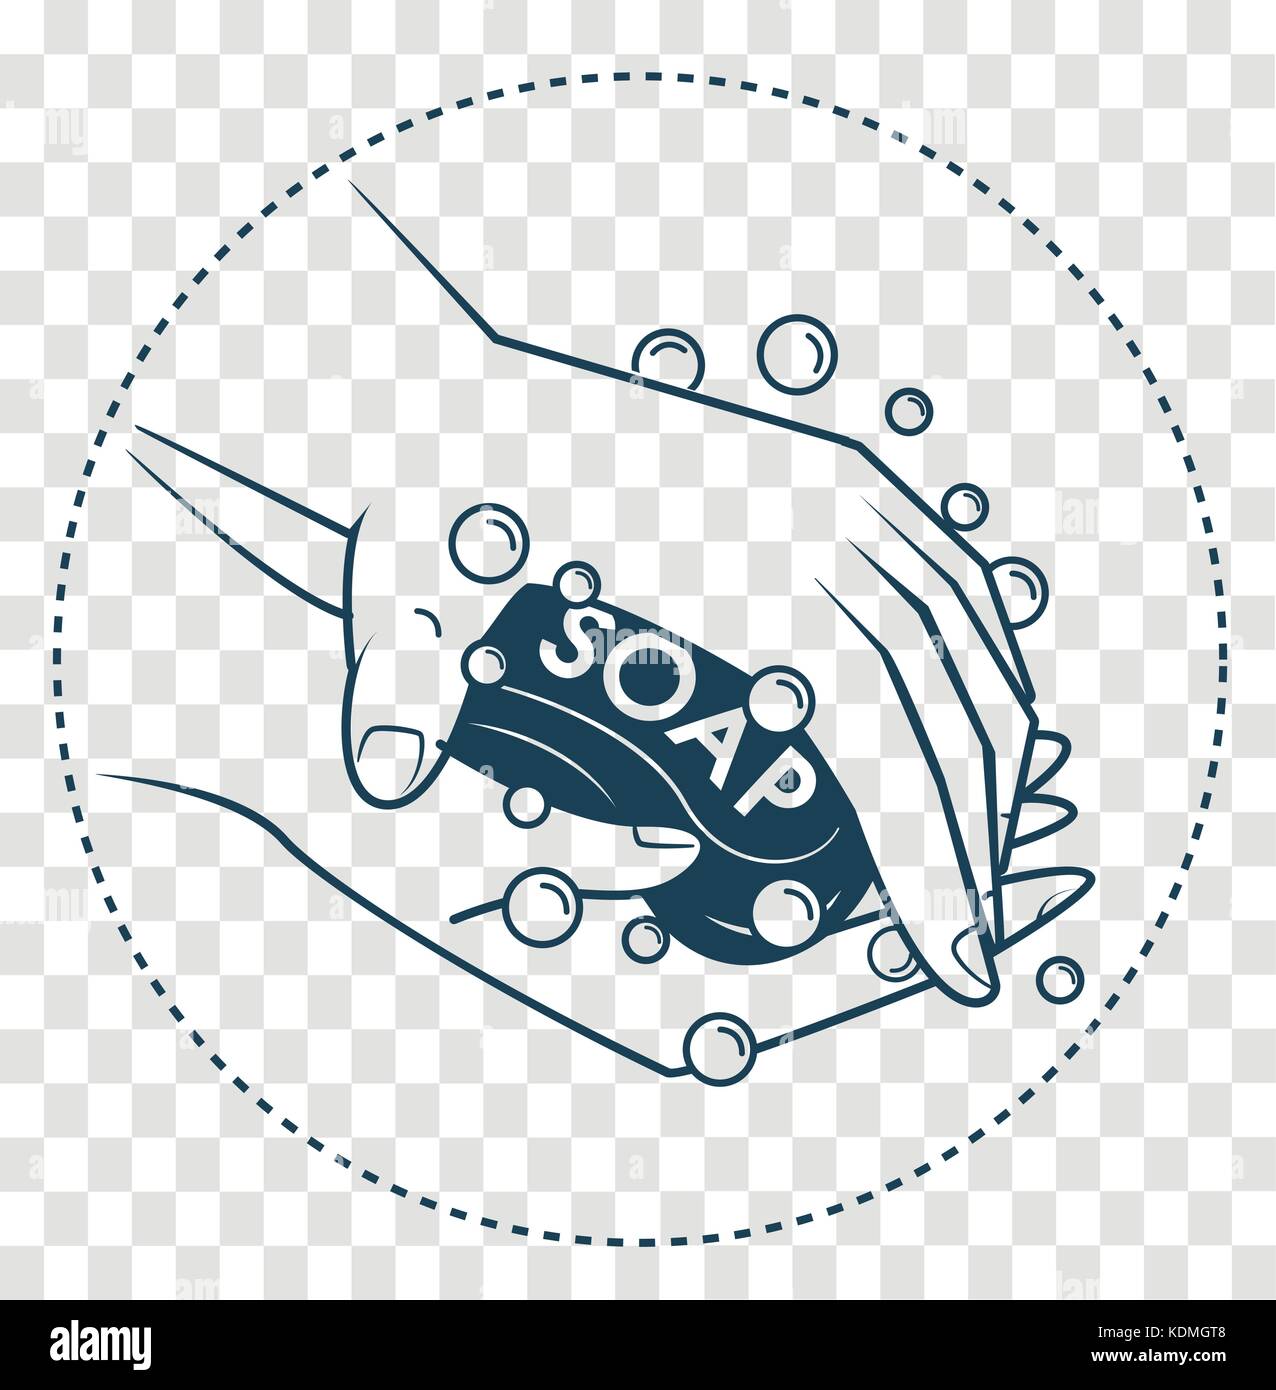 Concept de la propreté, l'hygiène dans la forme des mains avec du savon.  icon, silhouette dans le style linéaire Image Vectorielle Stock - Alamy